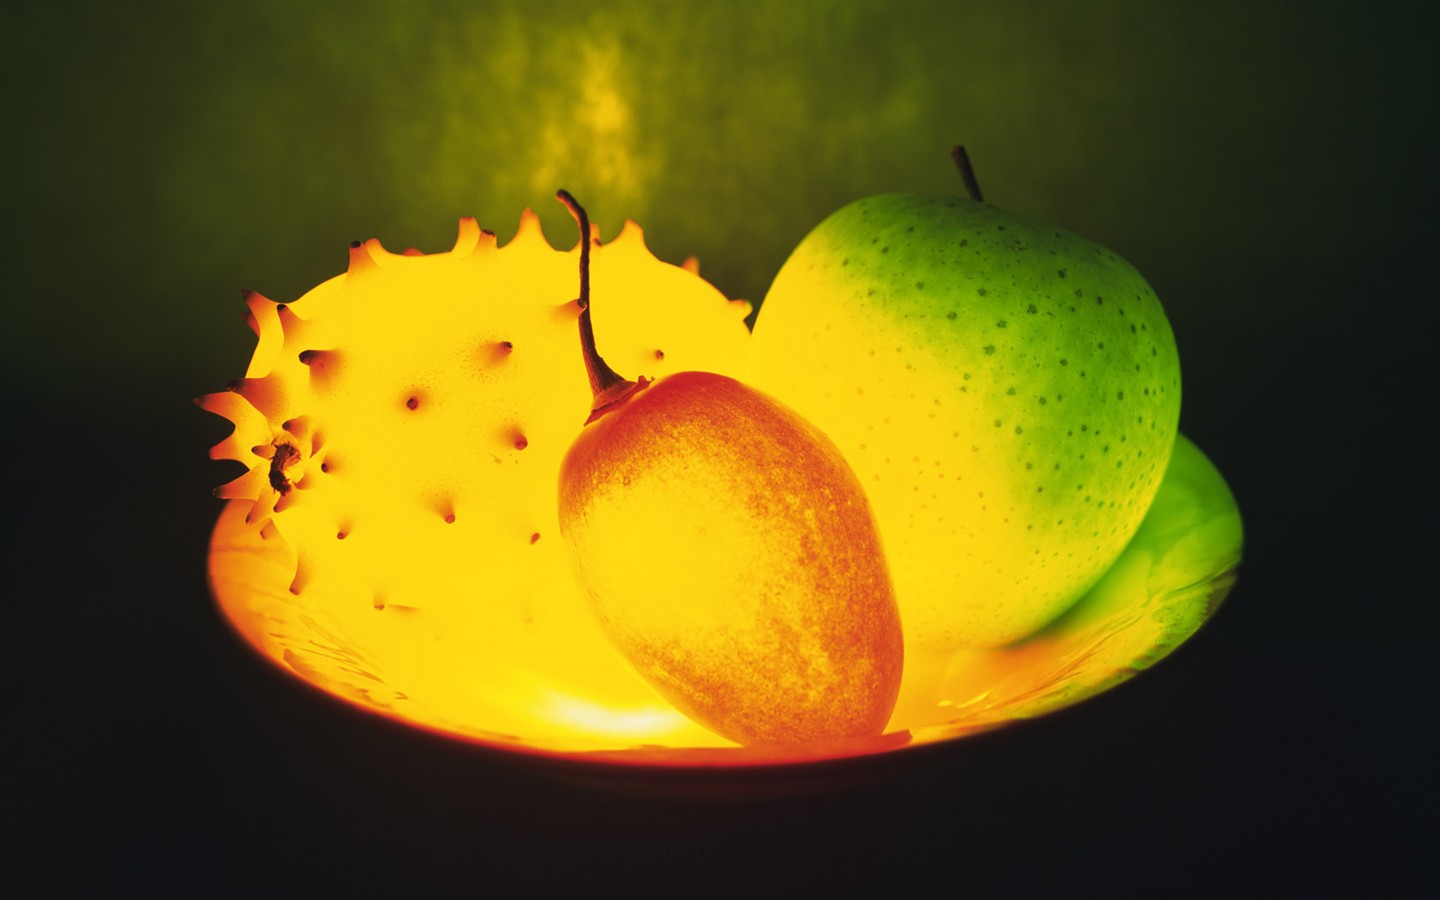 Característica de la luz de frutas (1) #13 - 1440x900